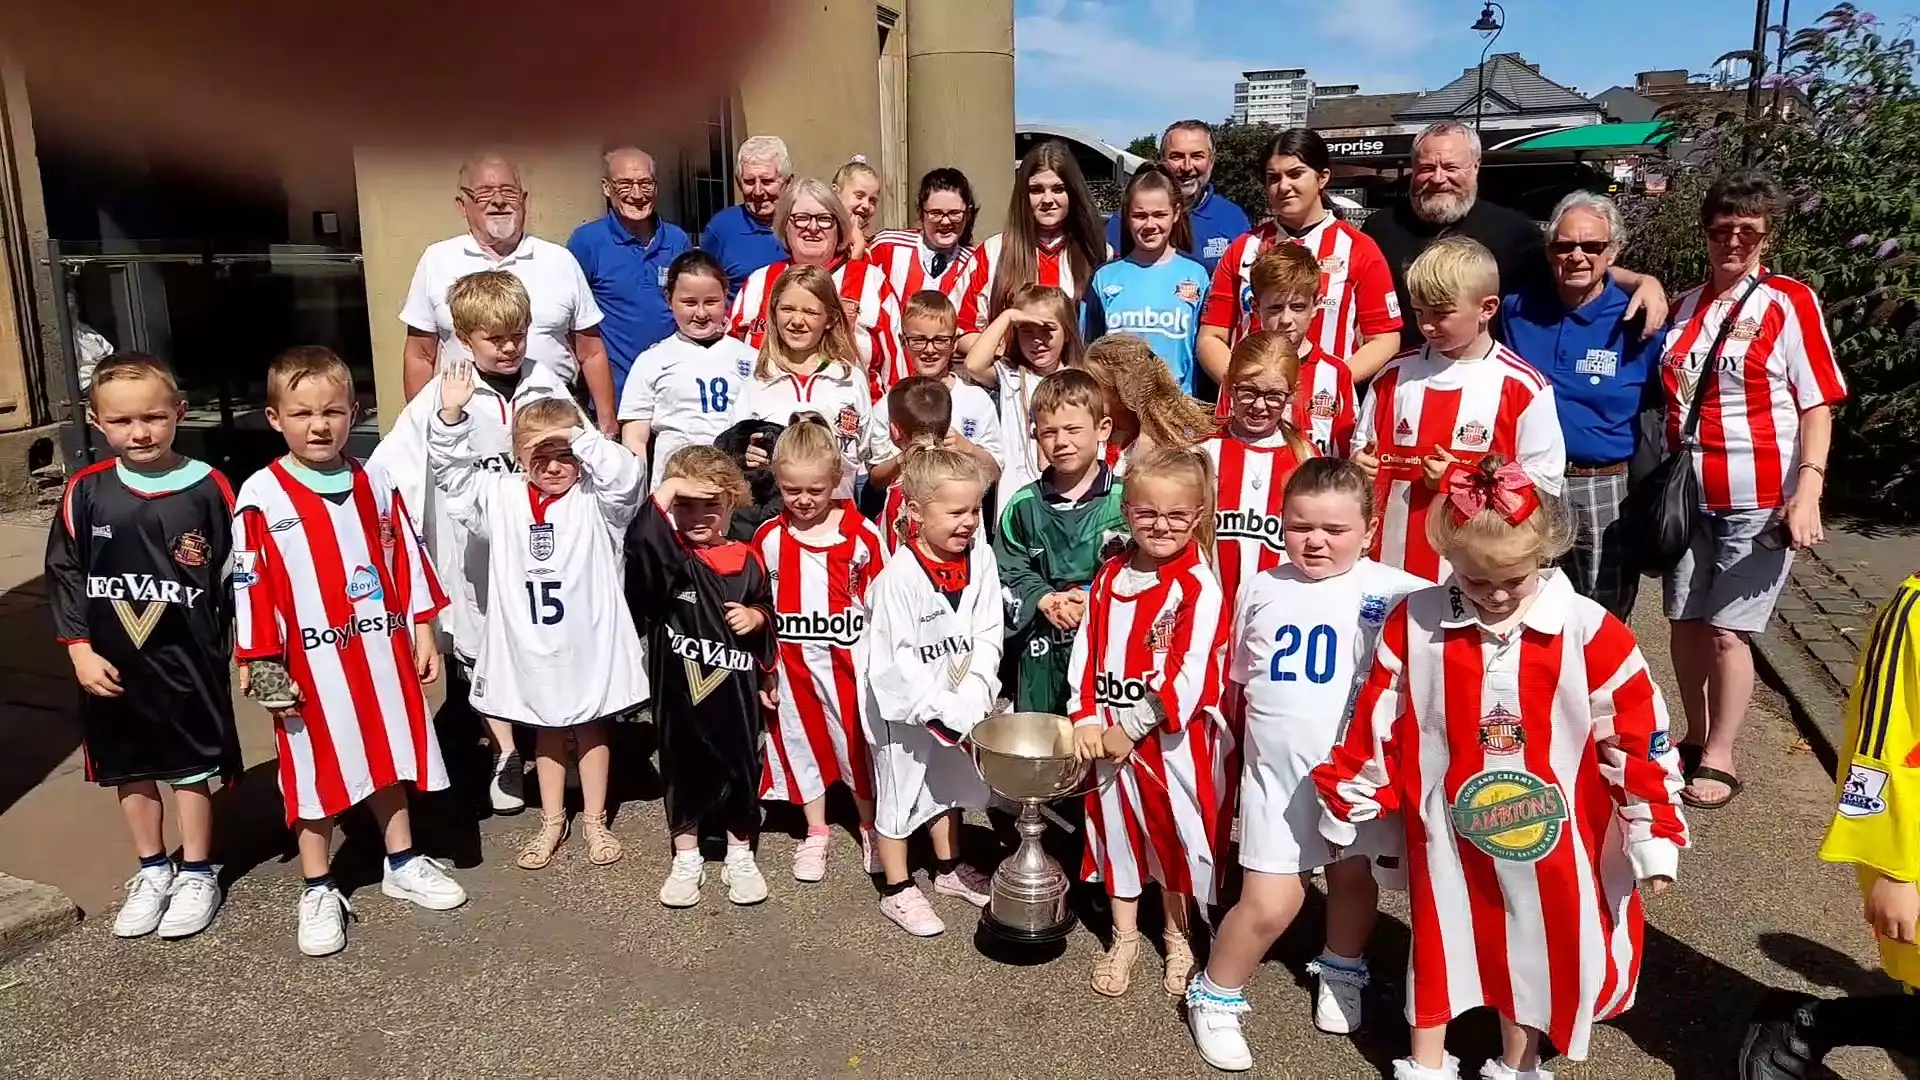 Mercancía de la Eredivisie para niños: inspirando a la próxima generación de aficionados al fútbol